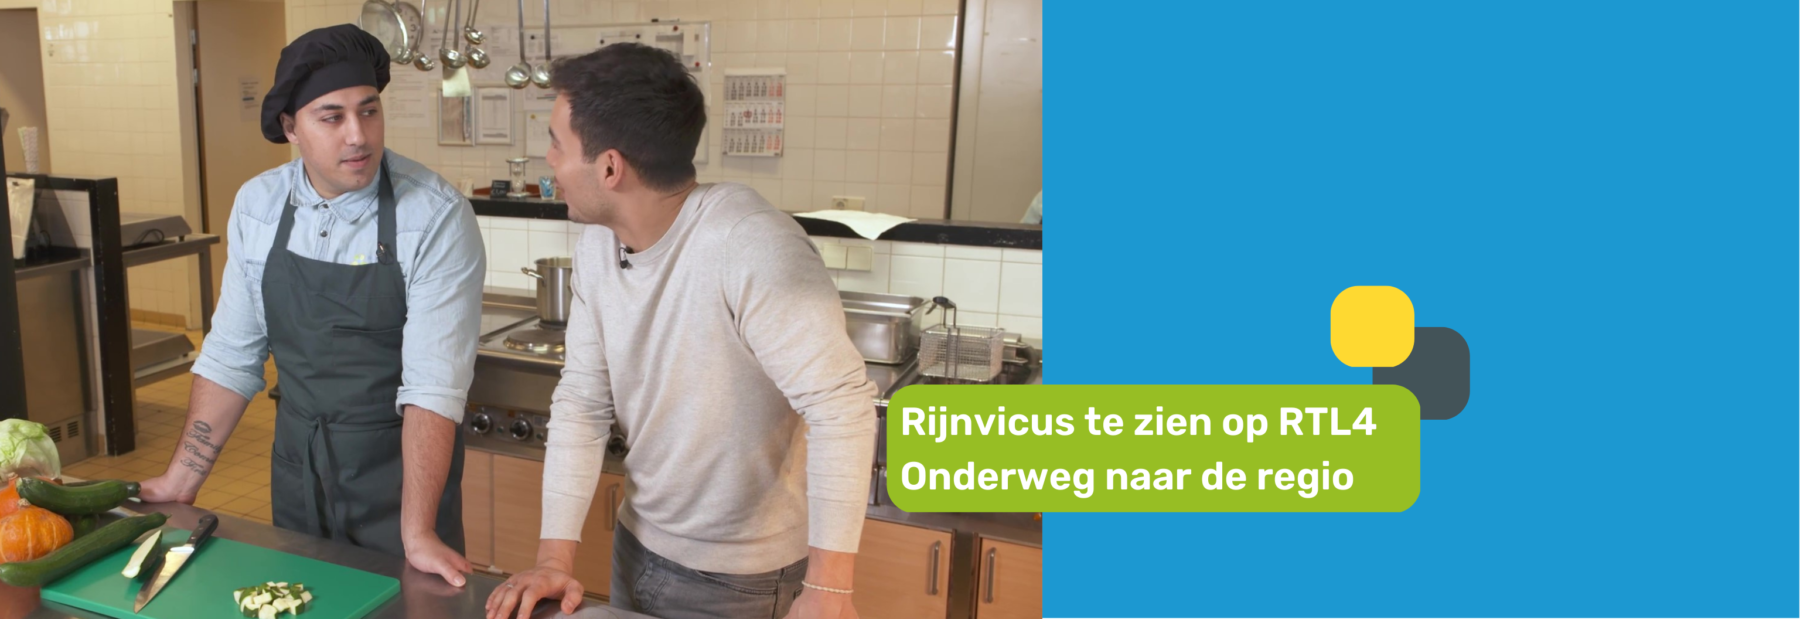 Hamza en presentator in de keuken van het bedrijfsrestaurant bij Rijnvicus